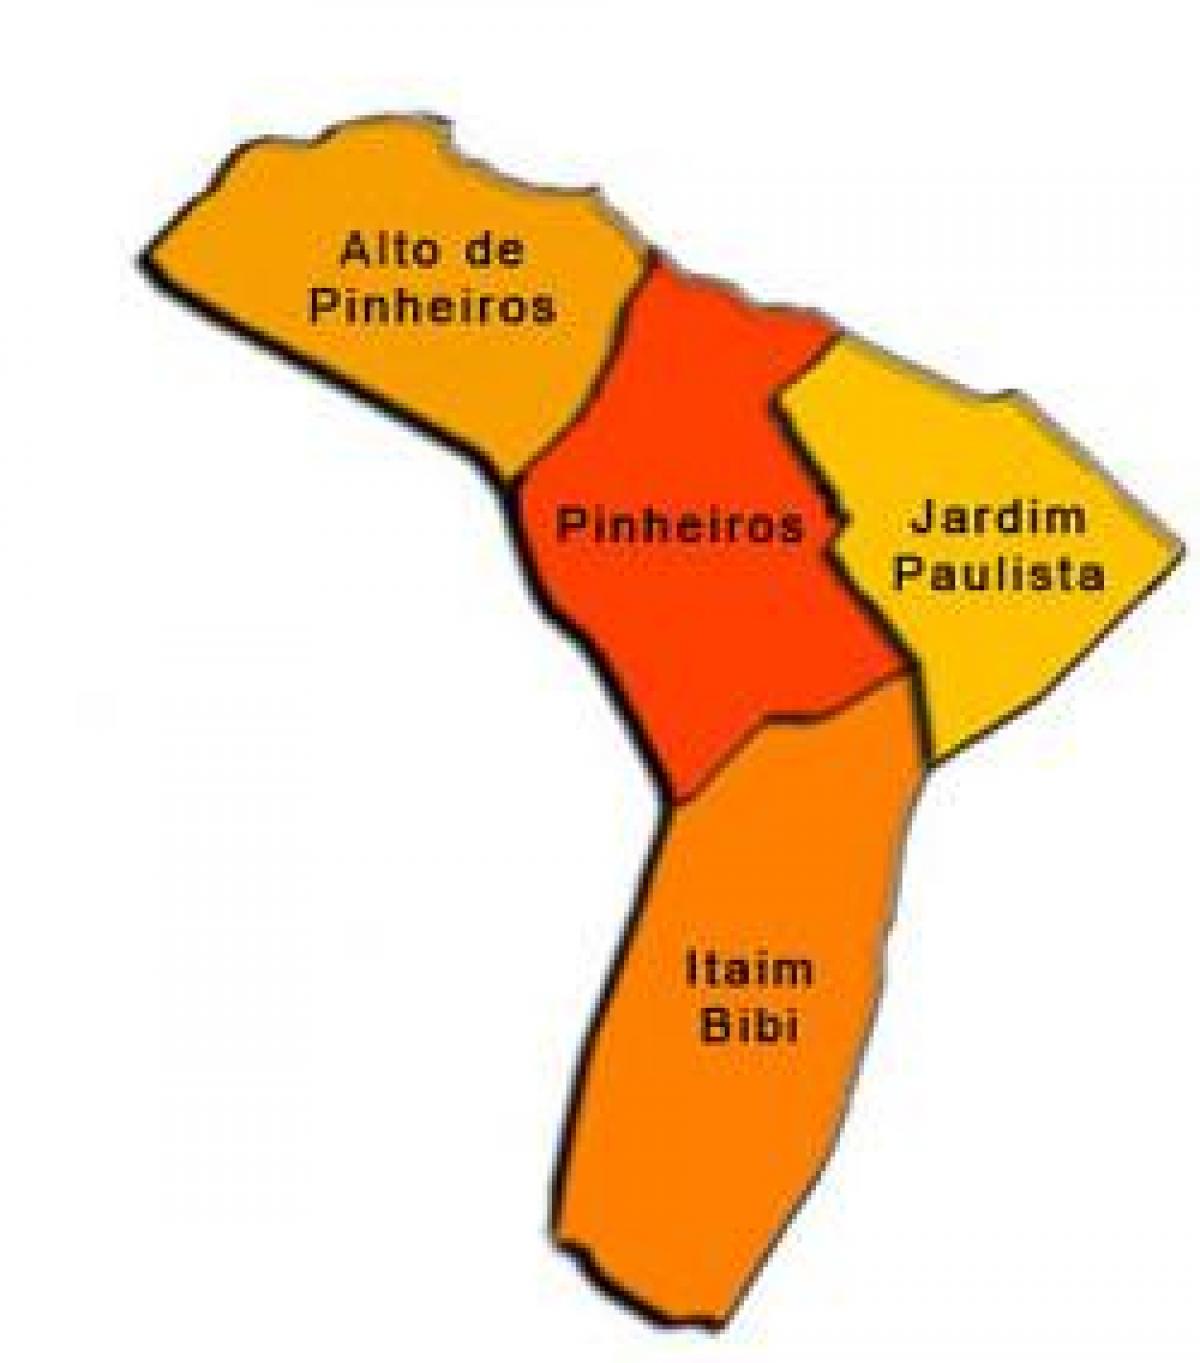 Χάρτης της Pinheiros υπο-νομού